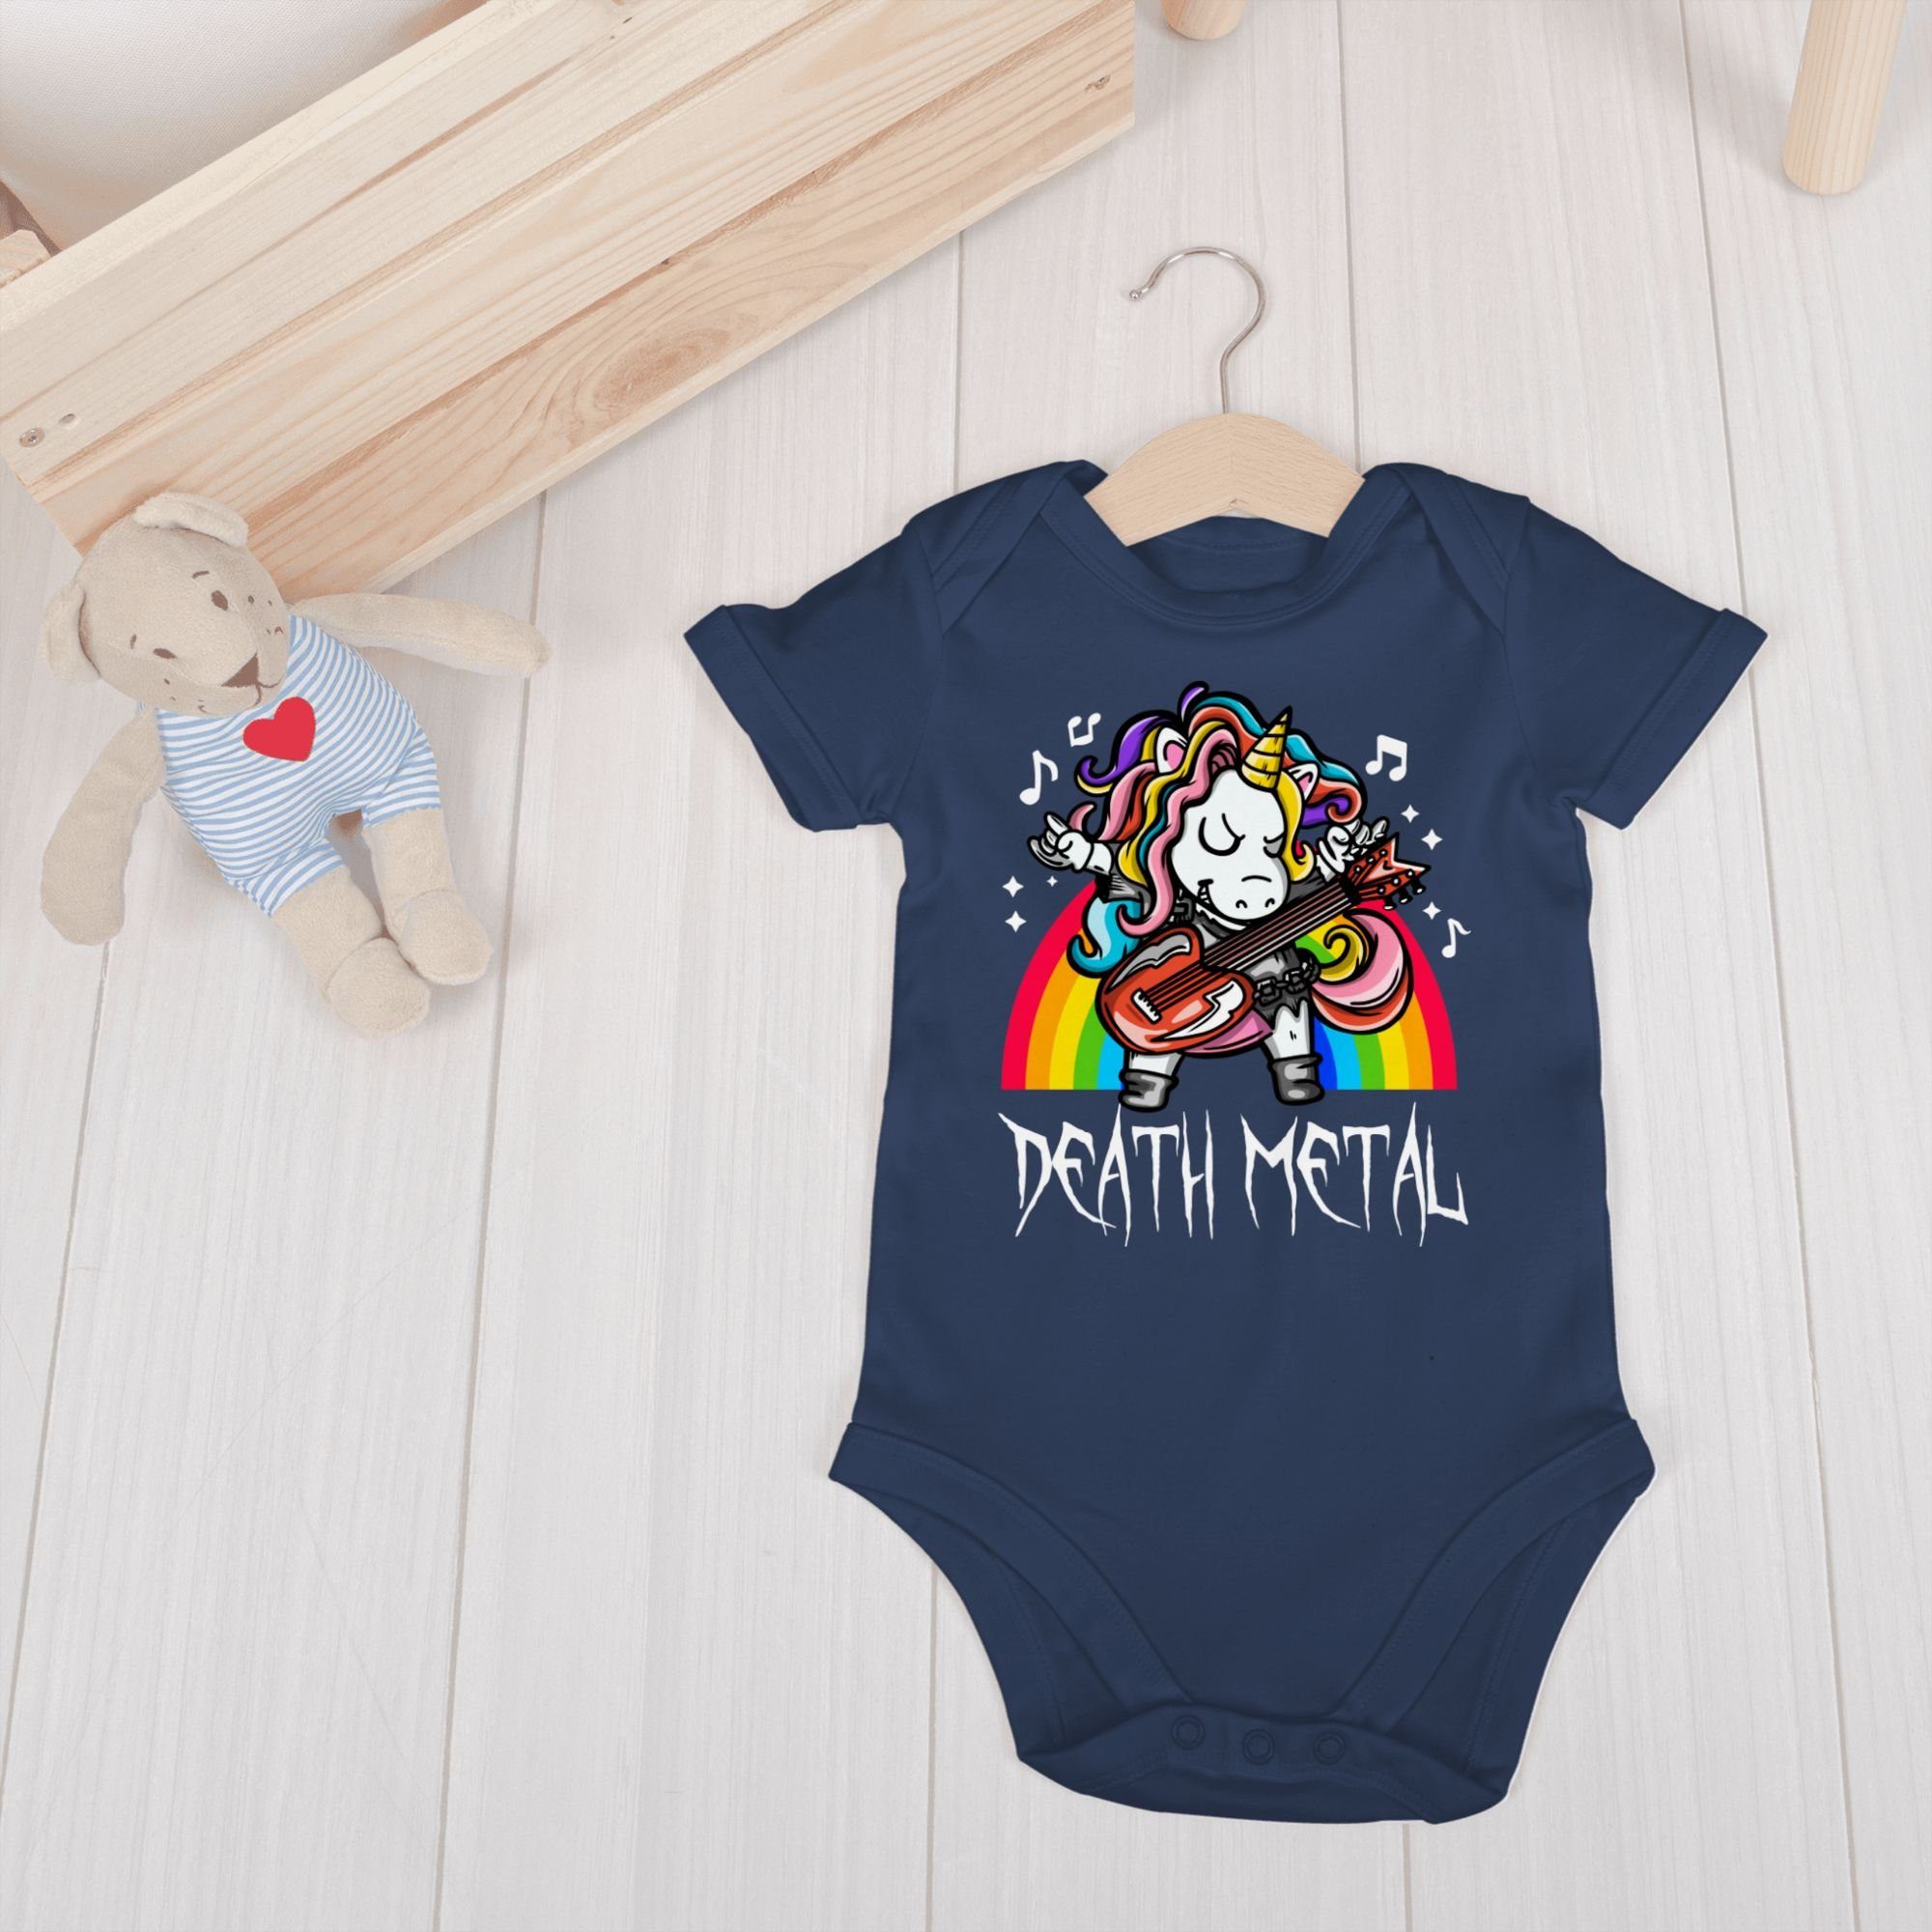 Shirtracer Shirtbody Death Metal 3 Baby Blau Navy Einhorn Sprüche